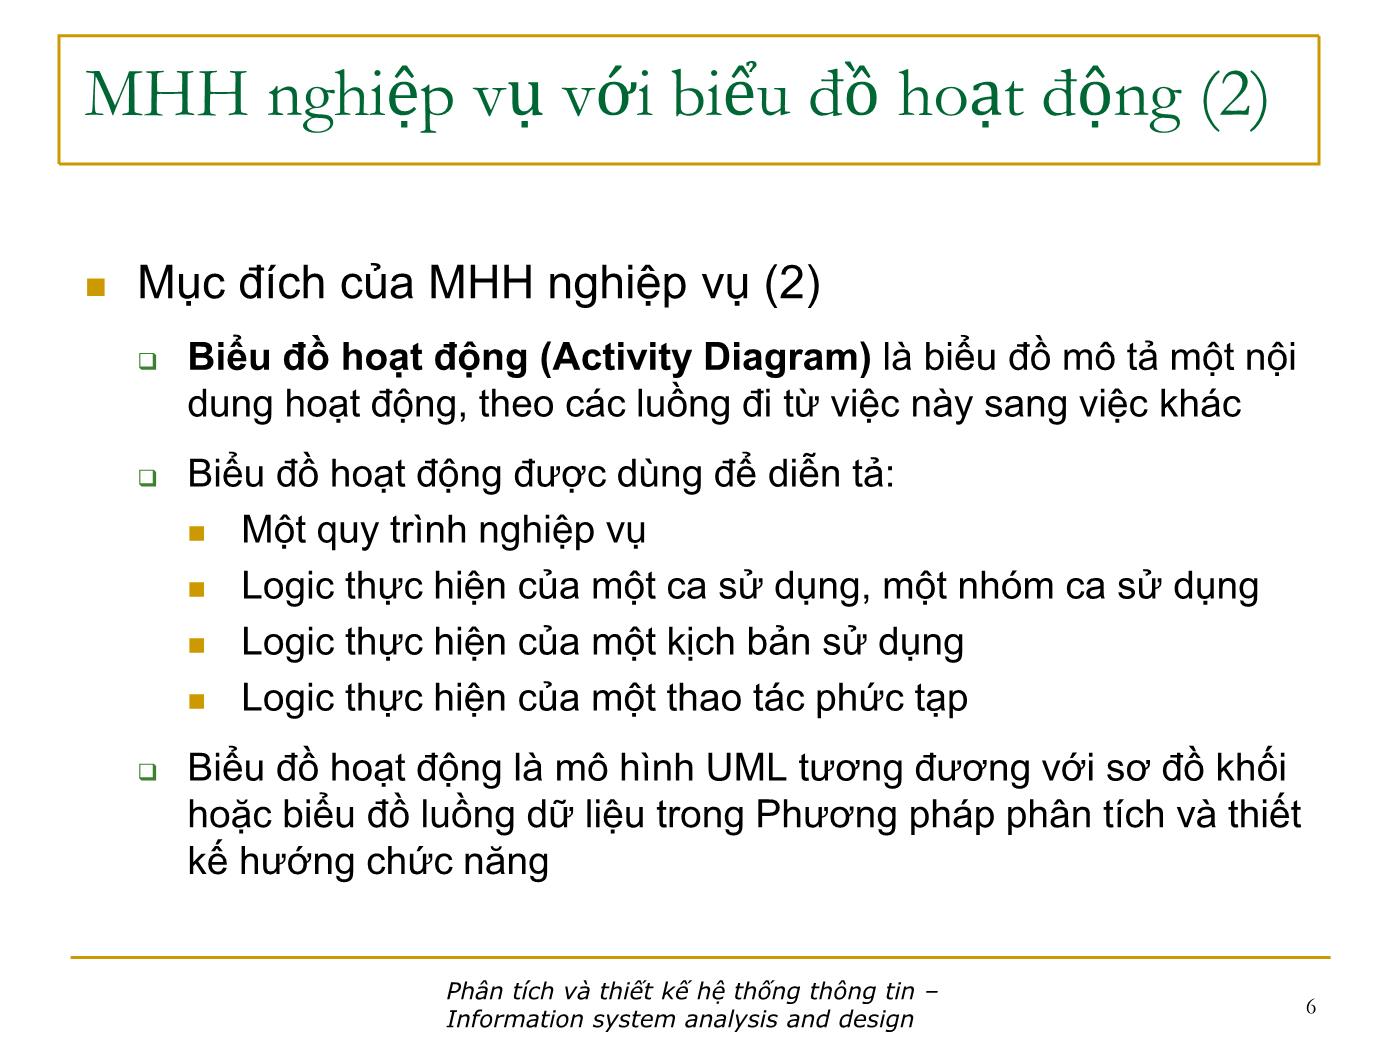 Bài giảng Phân tích và thiết kế hệ thống thông tin - Bài: Phân tích chức năng - Nguyễn Nhật Quang trang 6